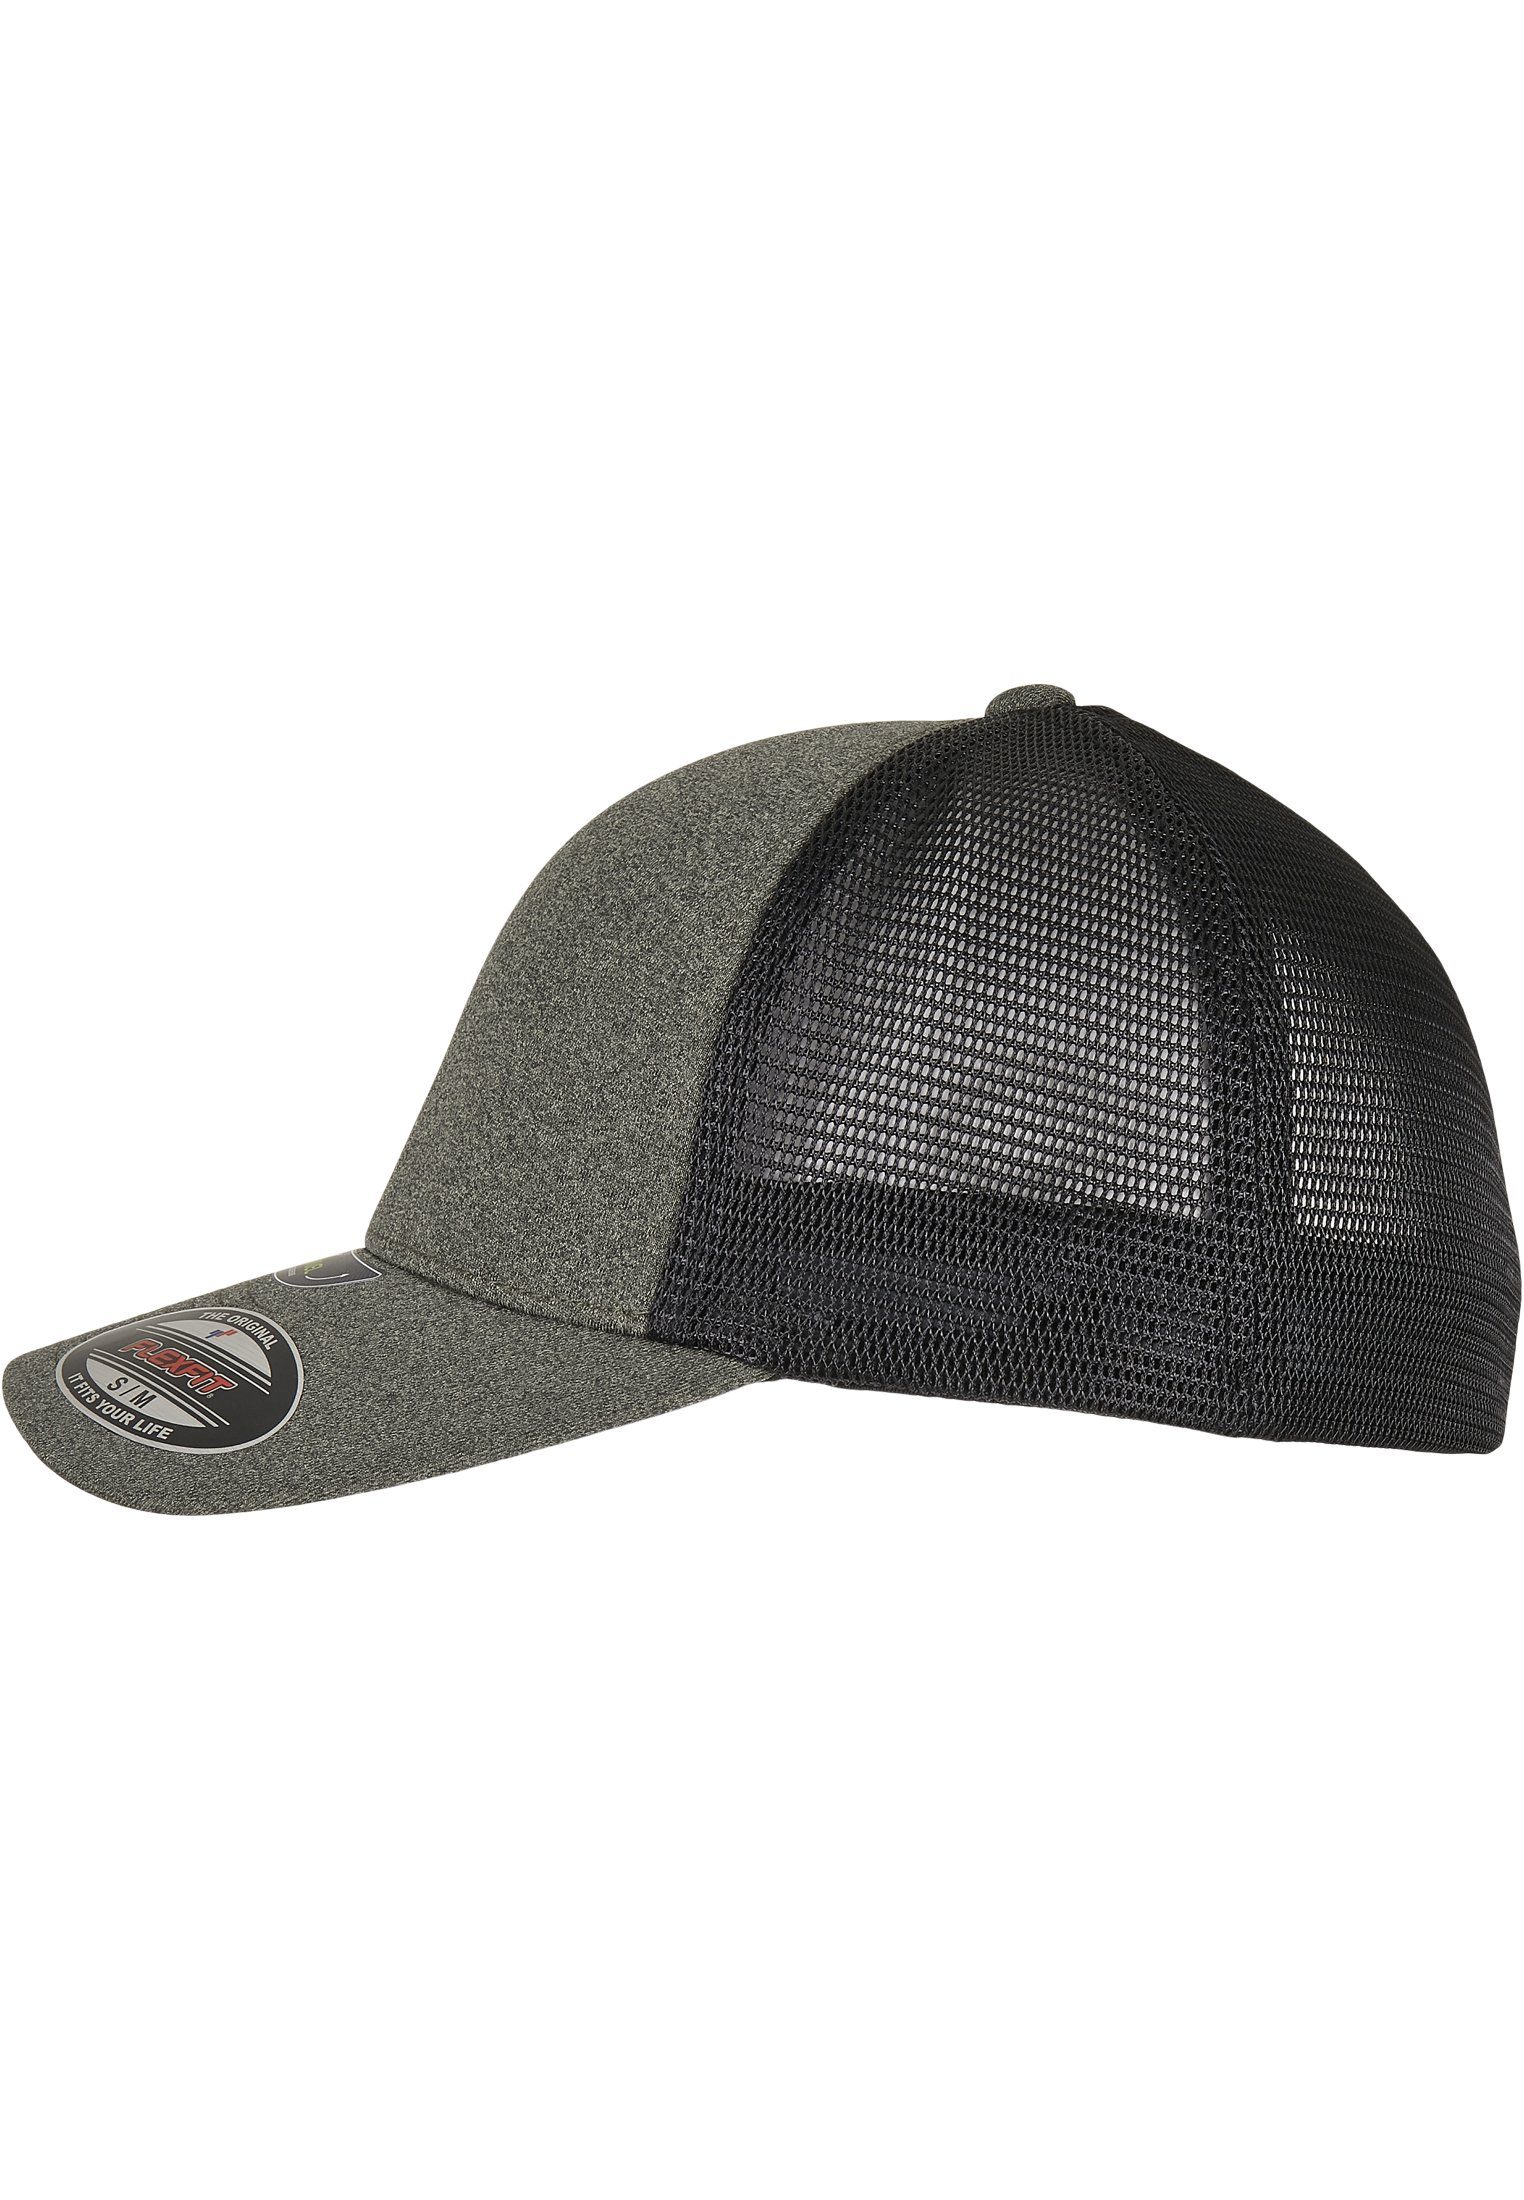 Flexfit Flex CAP UNIPANEL™ olive/black Accessoires FLEXFIT Cap